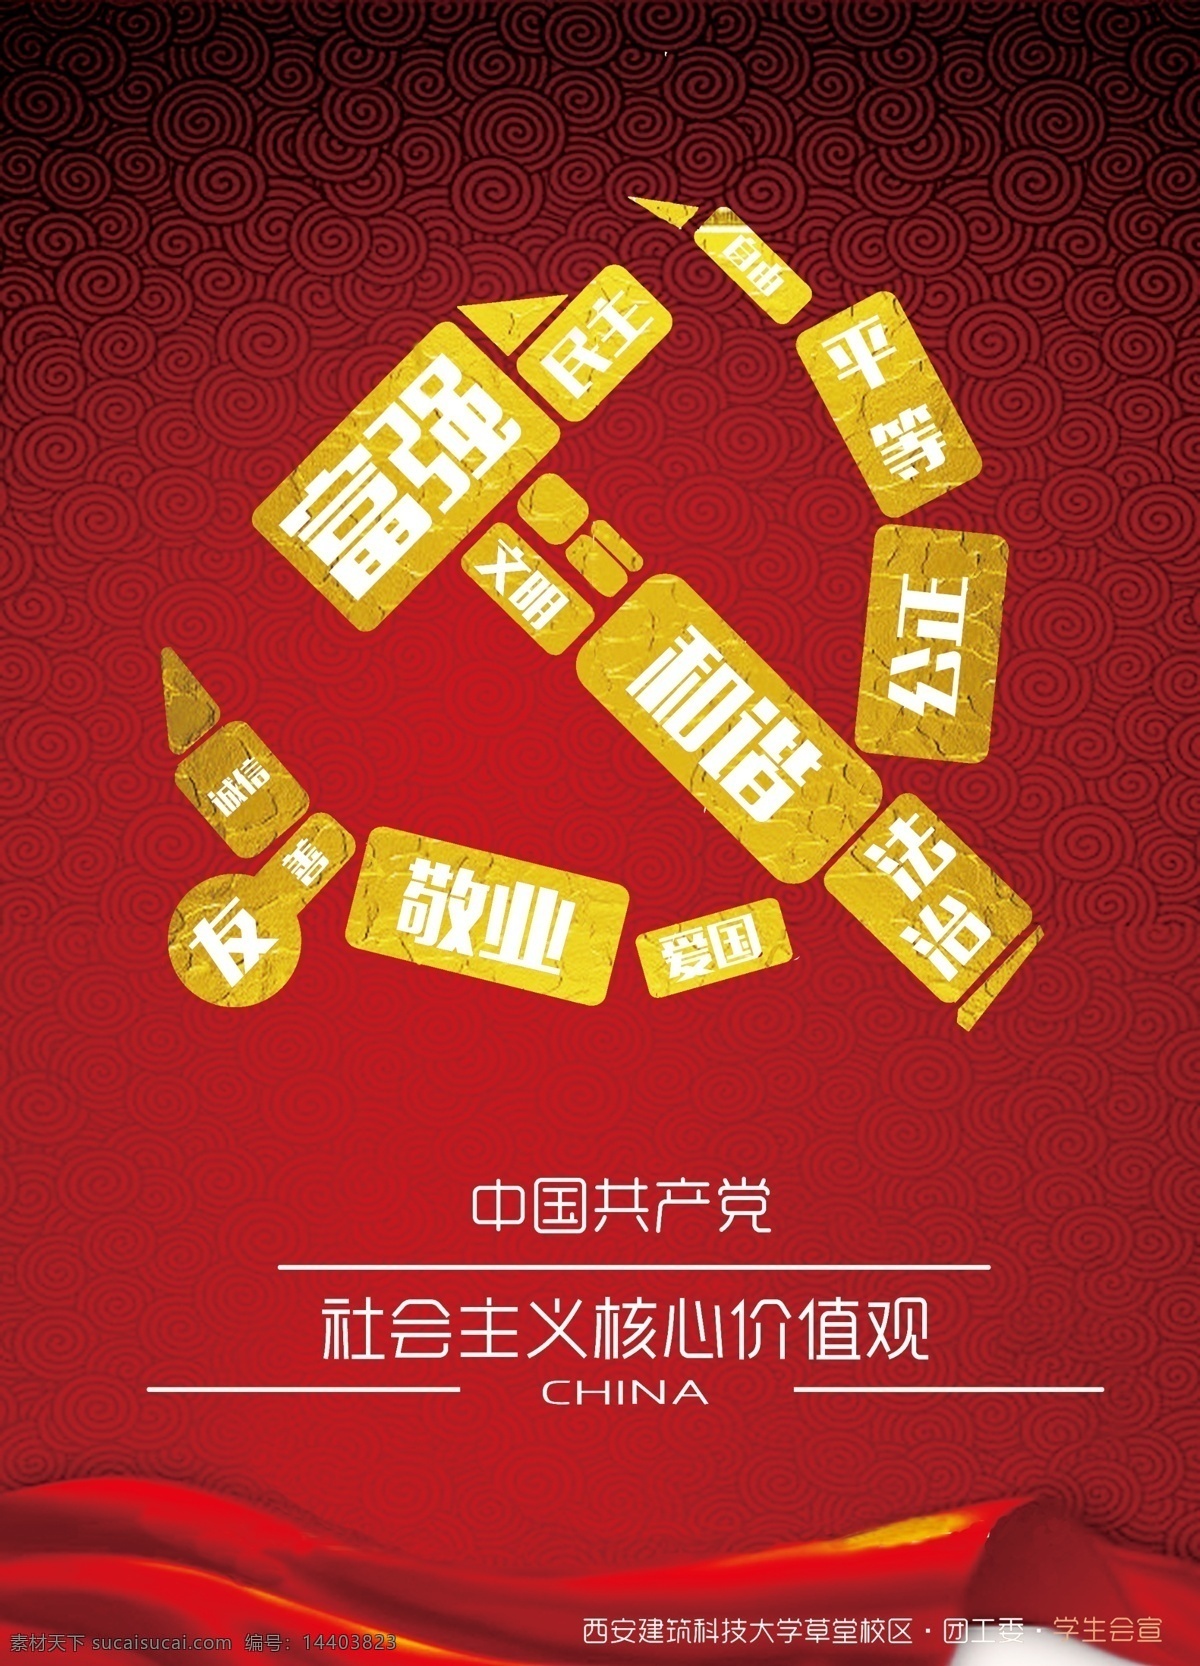 中国 社会主义 核心 价值观 宣传海报 海报 红色